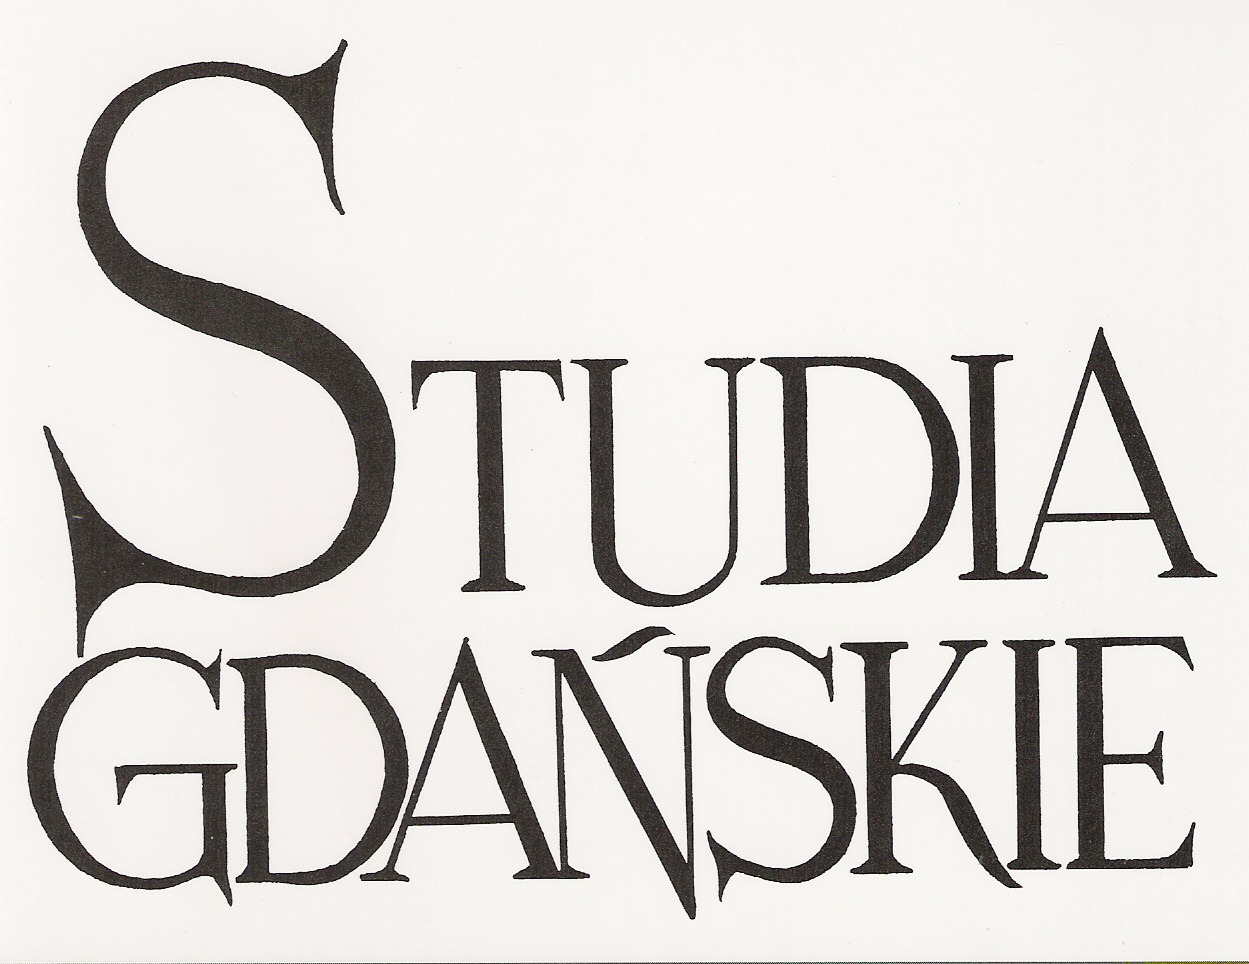 Gdansk Studies Cover Image